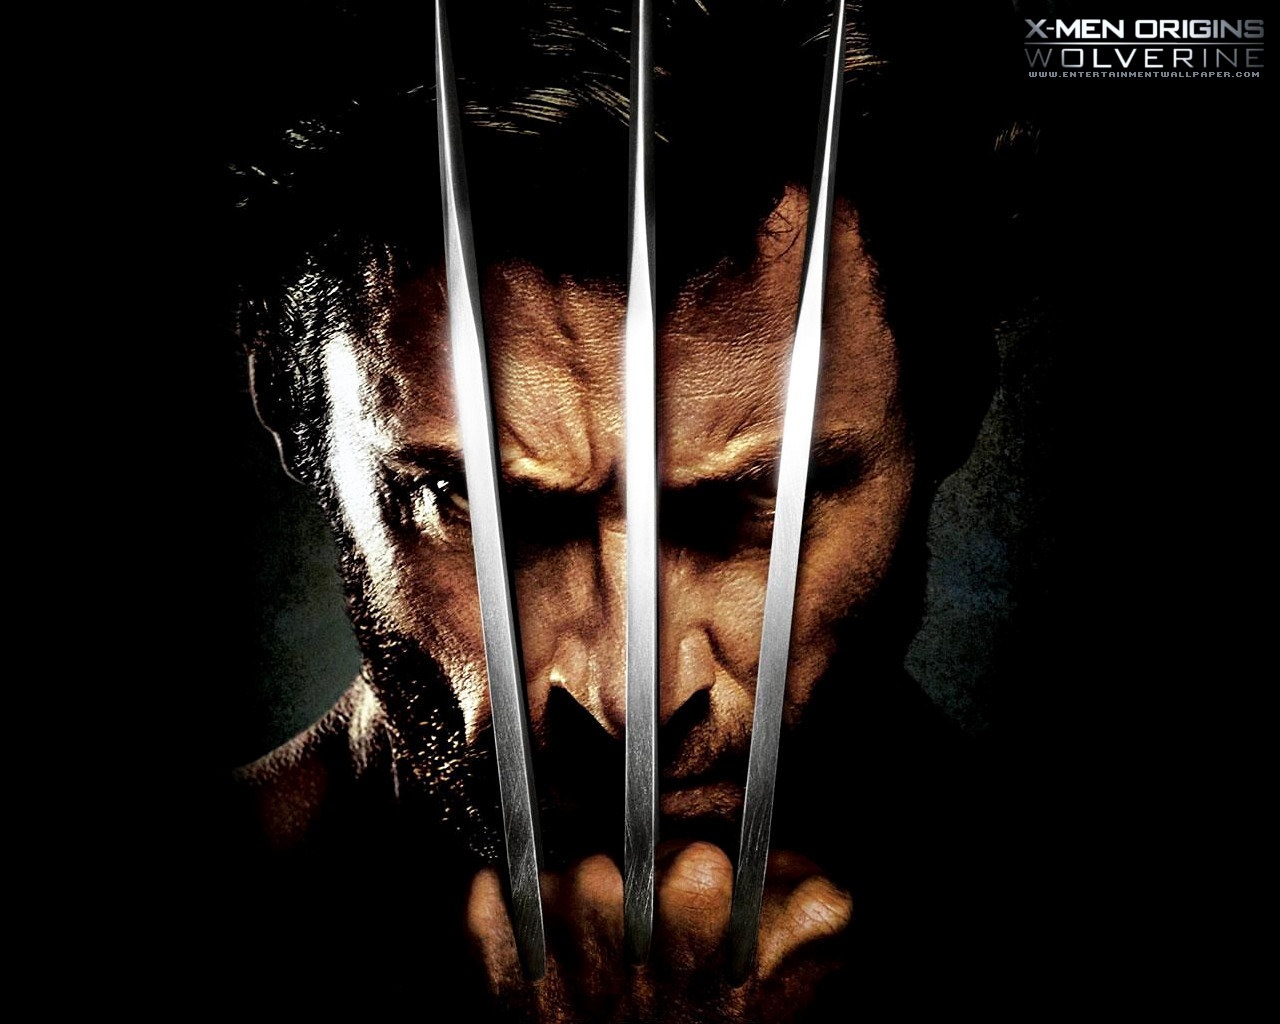 Best X Men Origins Wolverine Wallpapers Whats Up